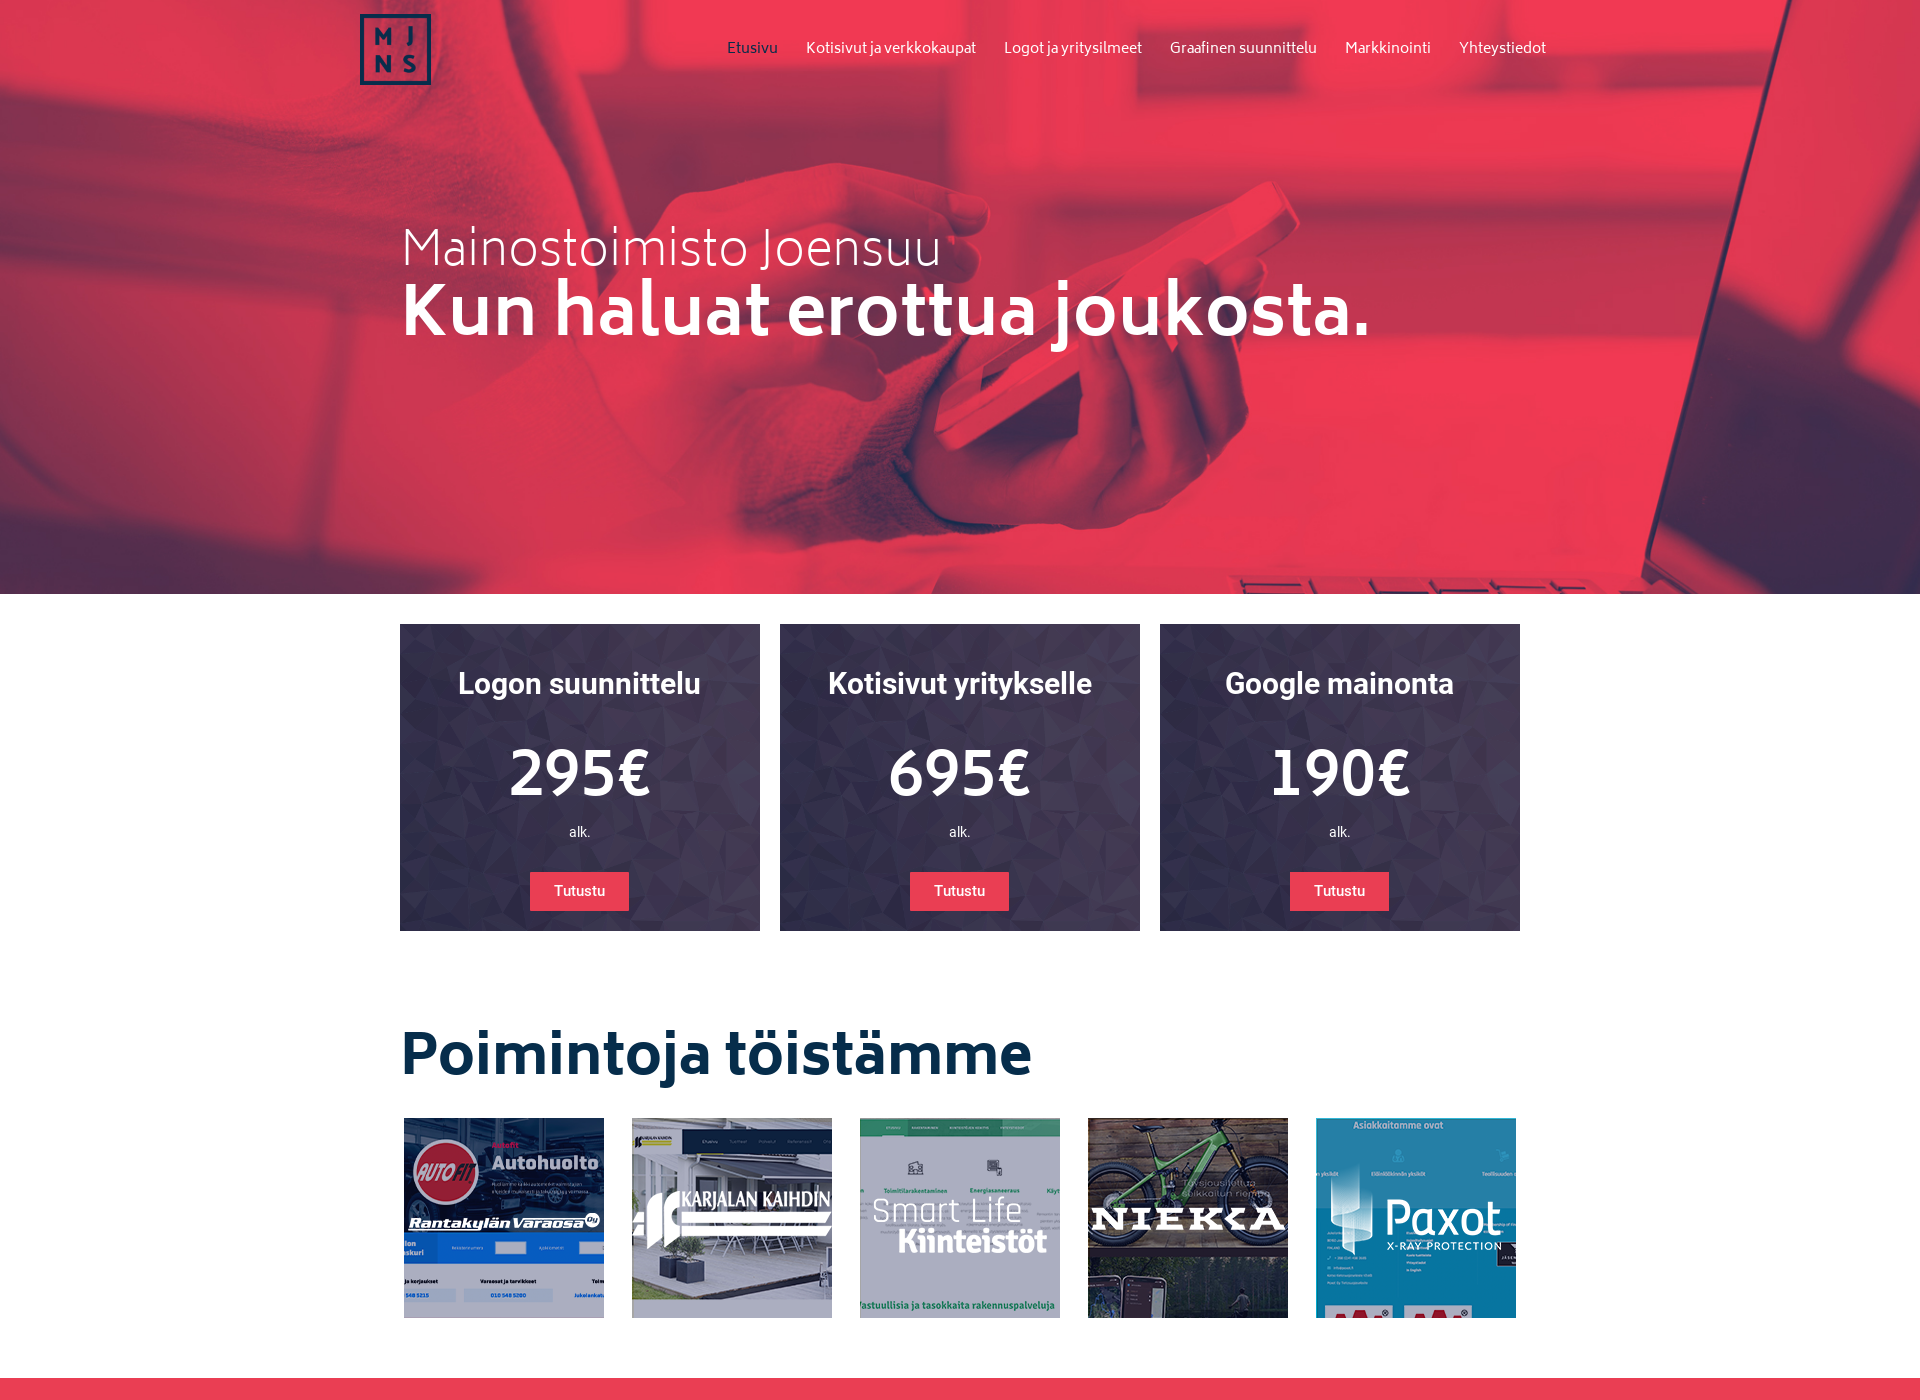 Näyttökuva mainostoimistojoensuu.fi